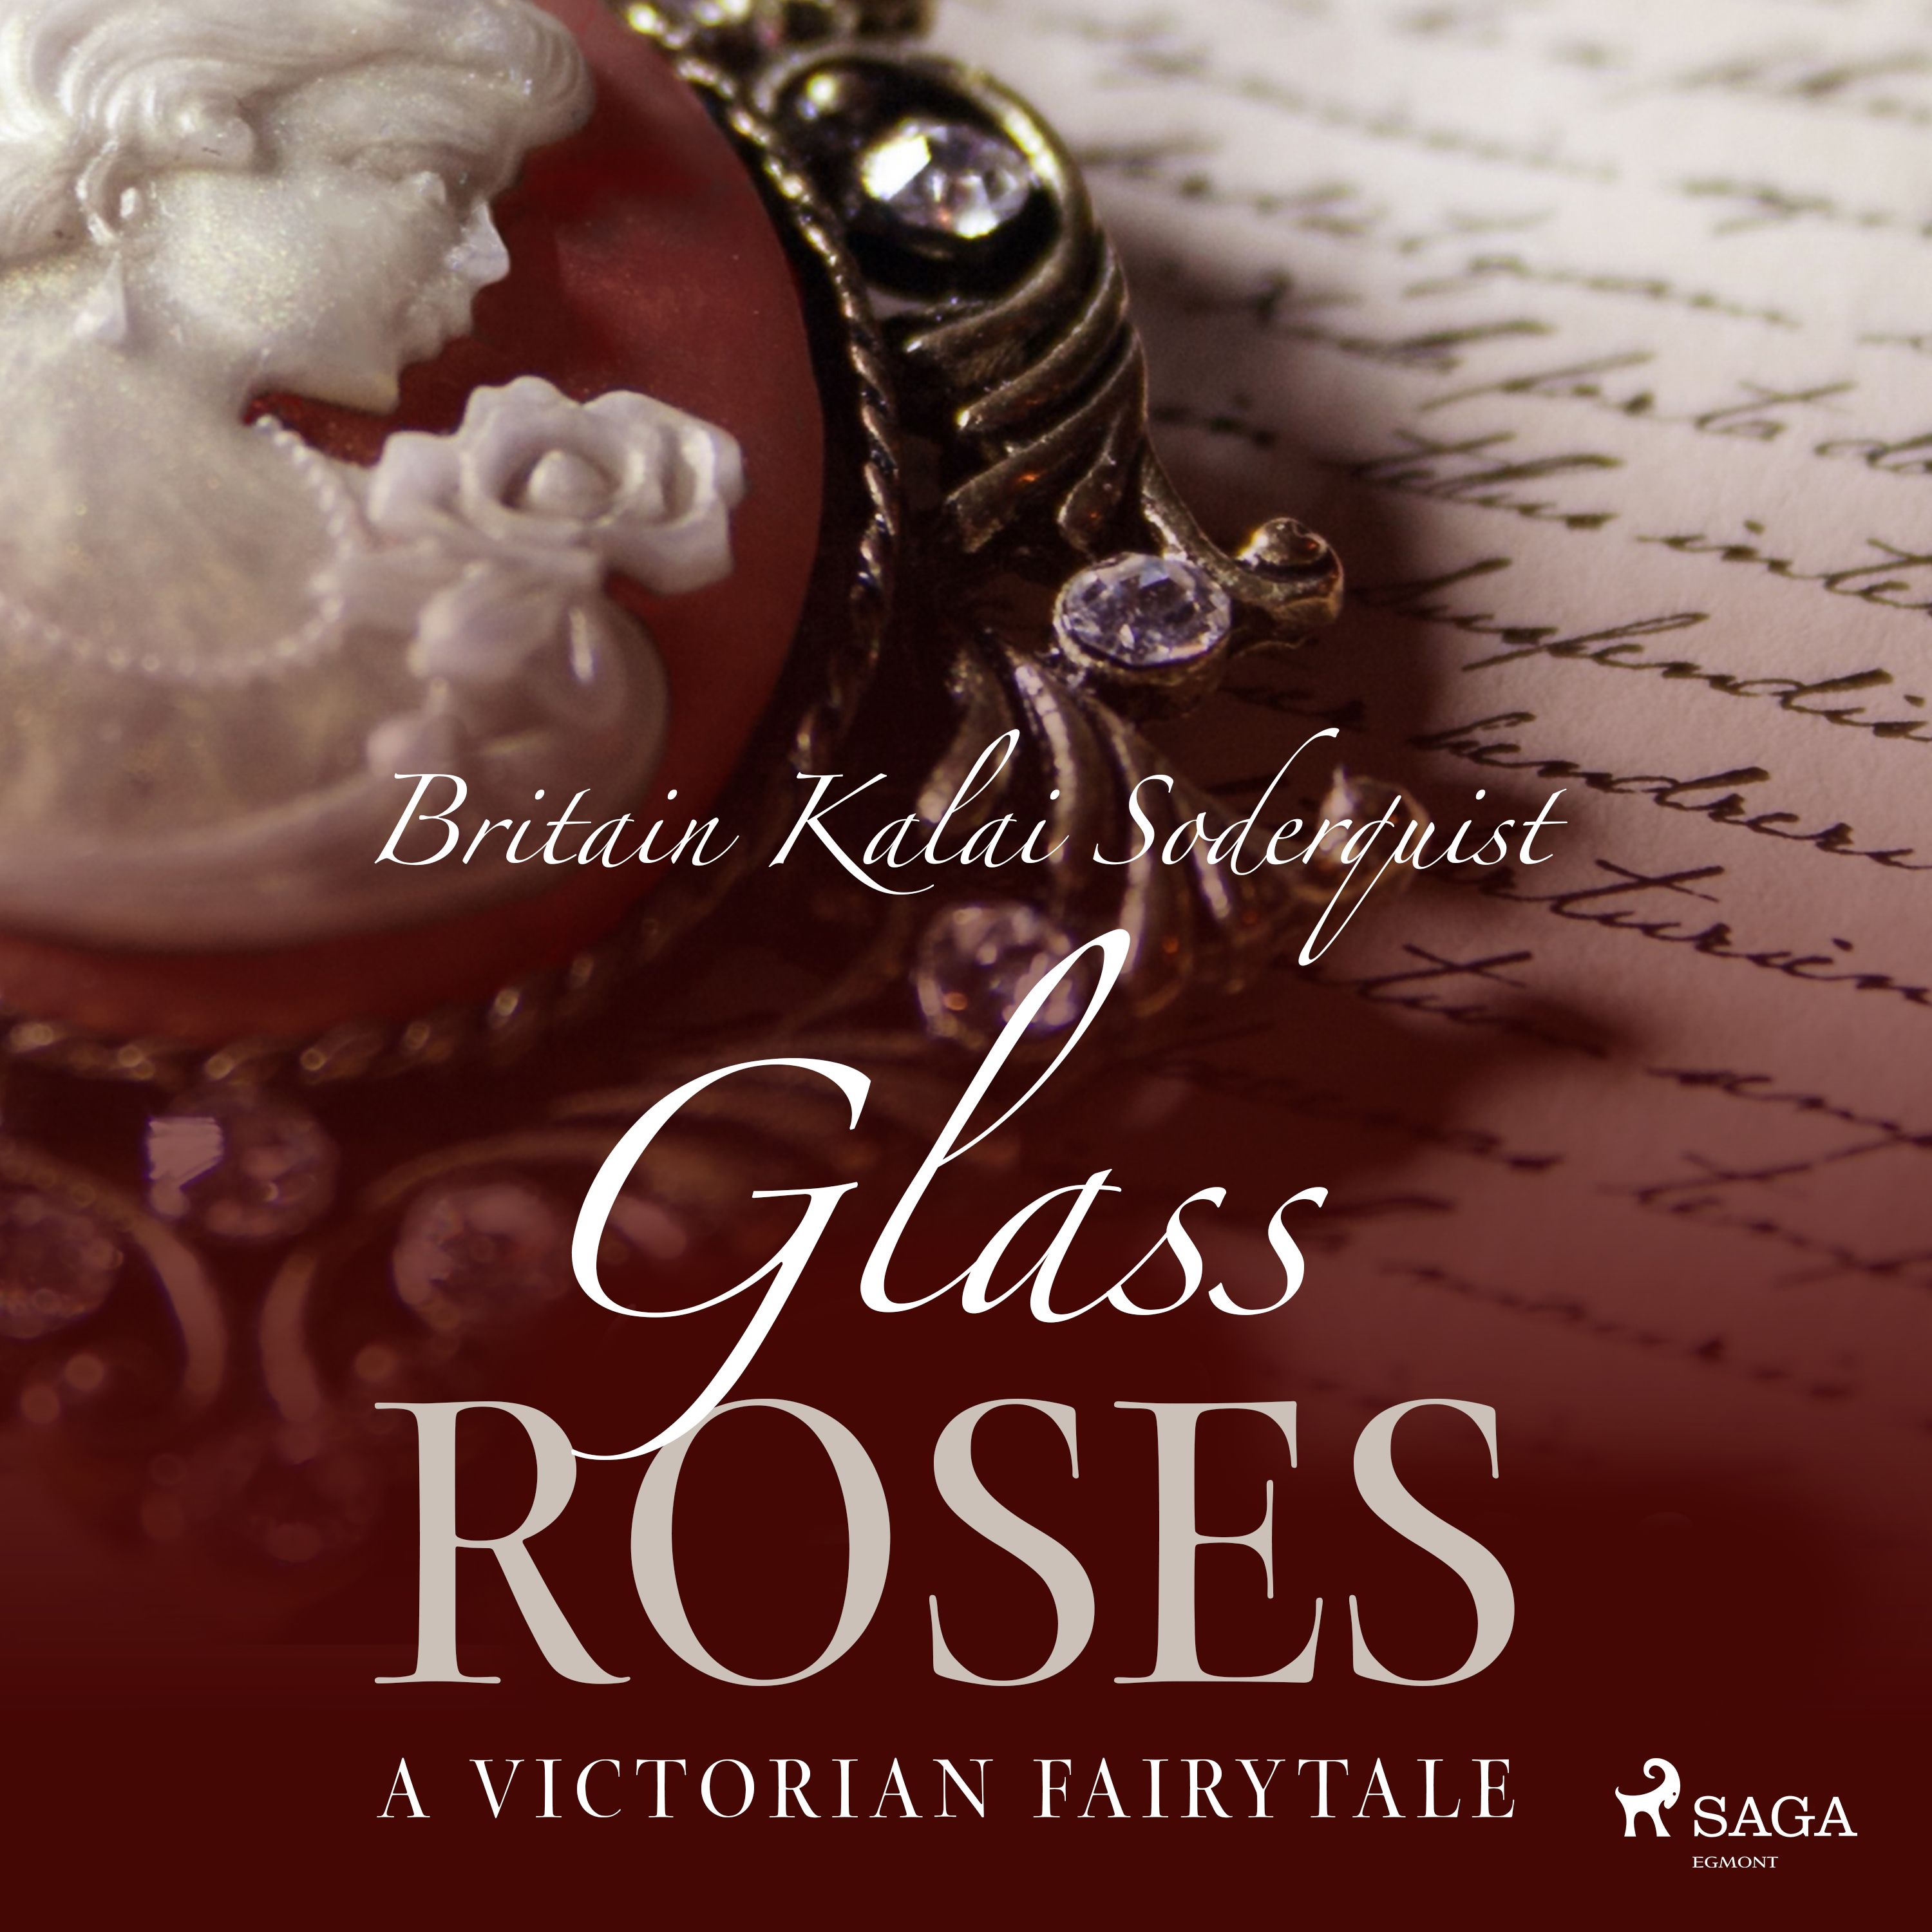 Glass Roses, ljudbok av Britain Kalai Soderquist